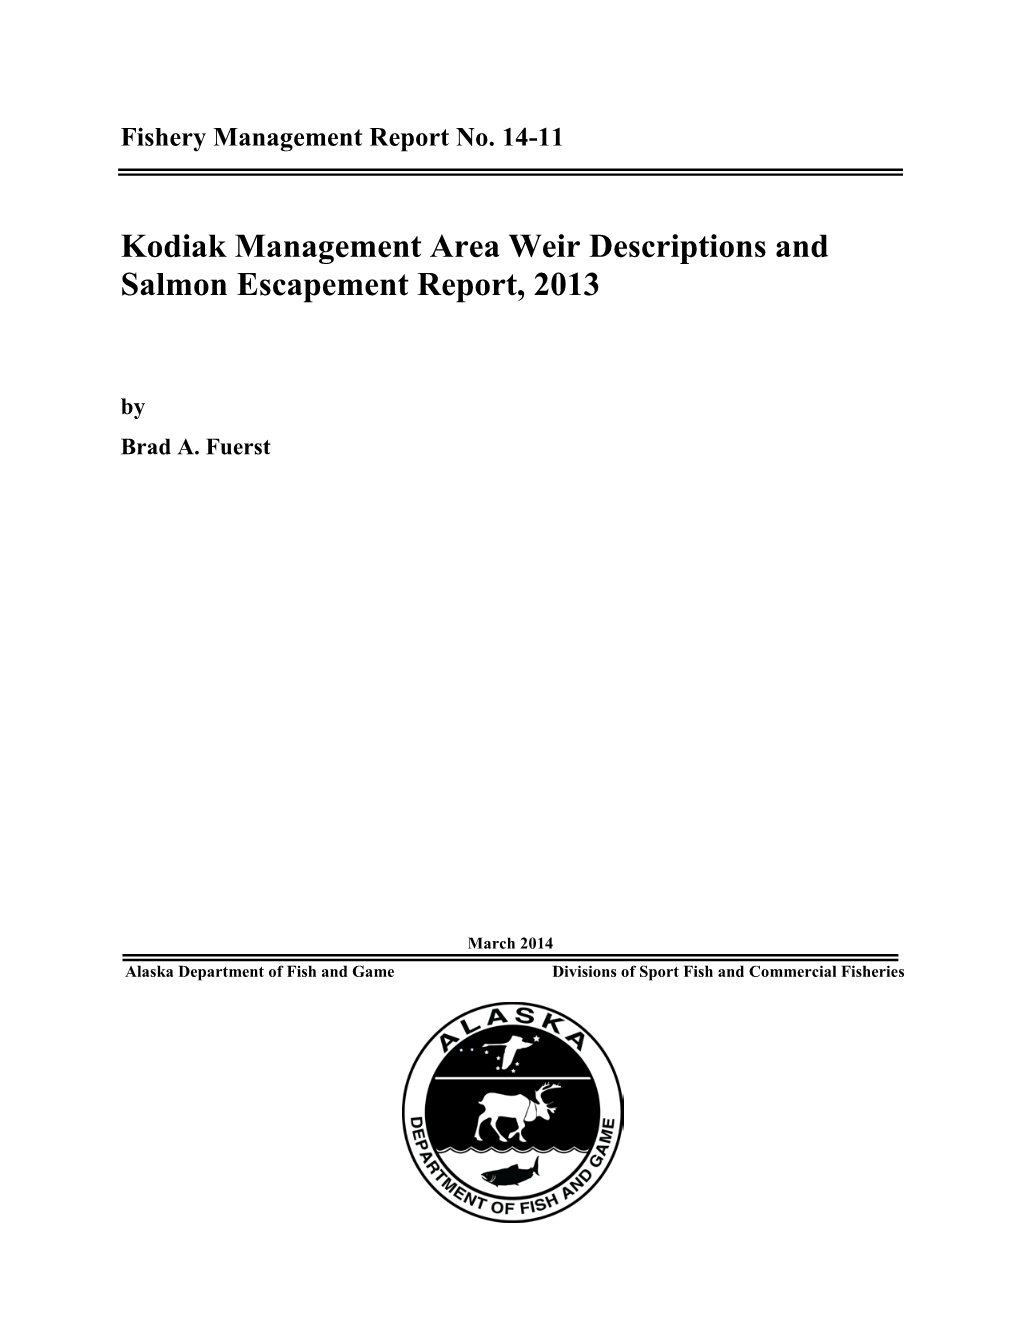 Kodiak Management Area Weir Descriptions and Salmon Escapement Report, 2013